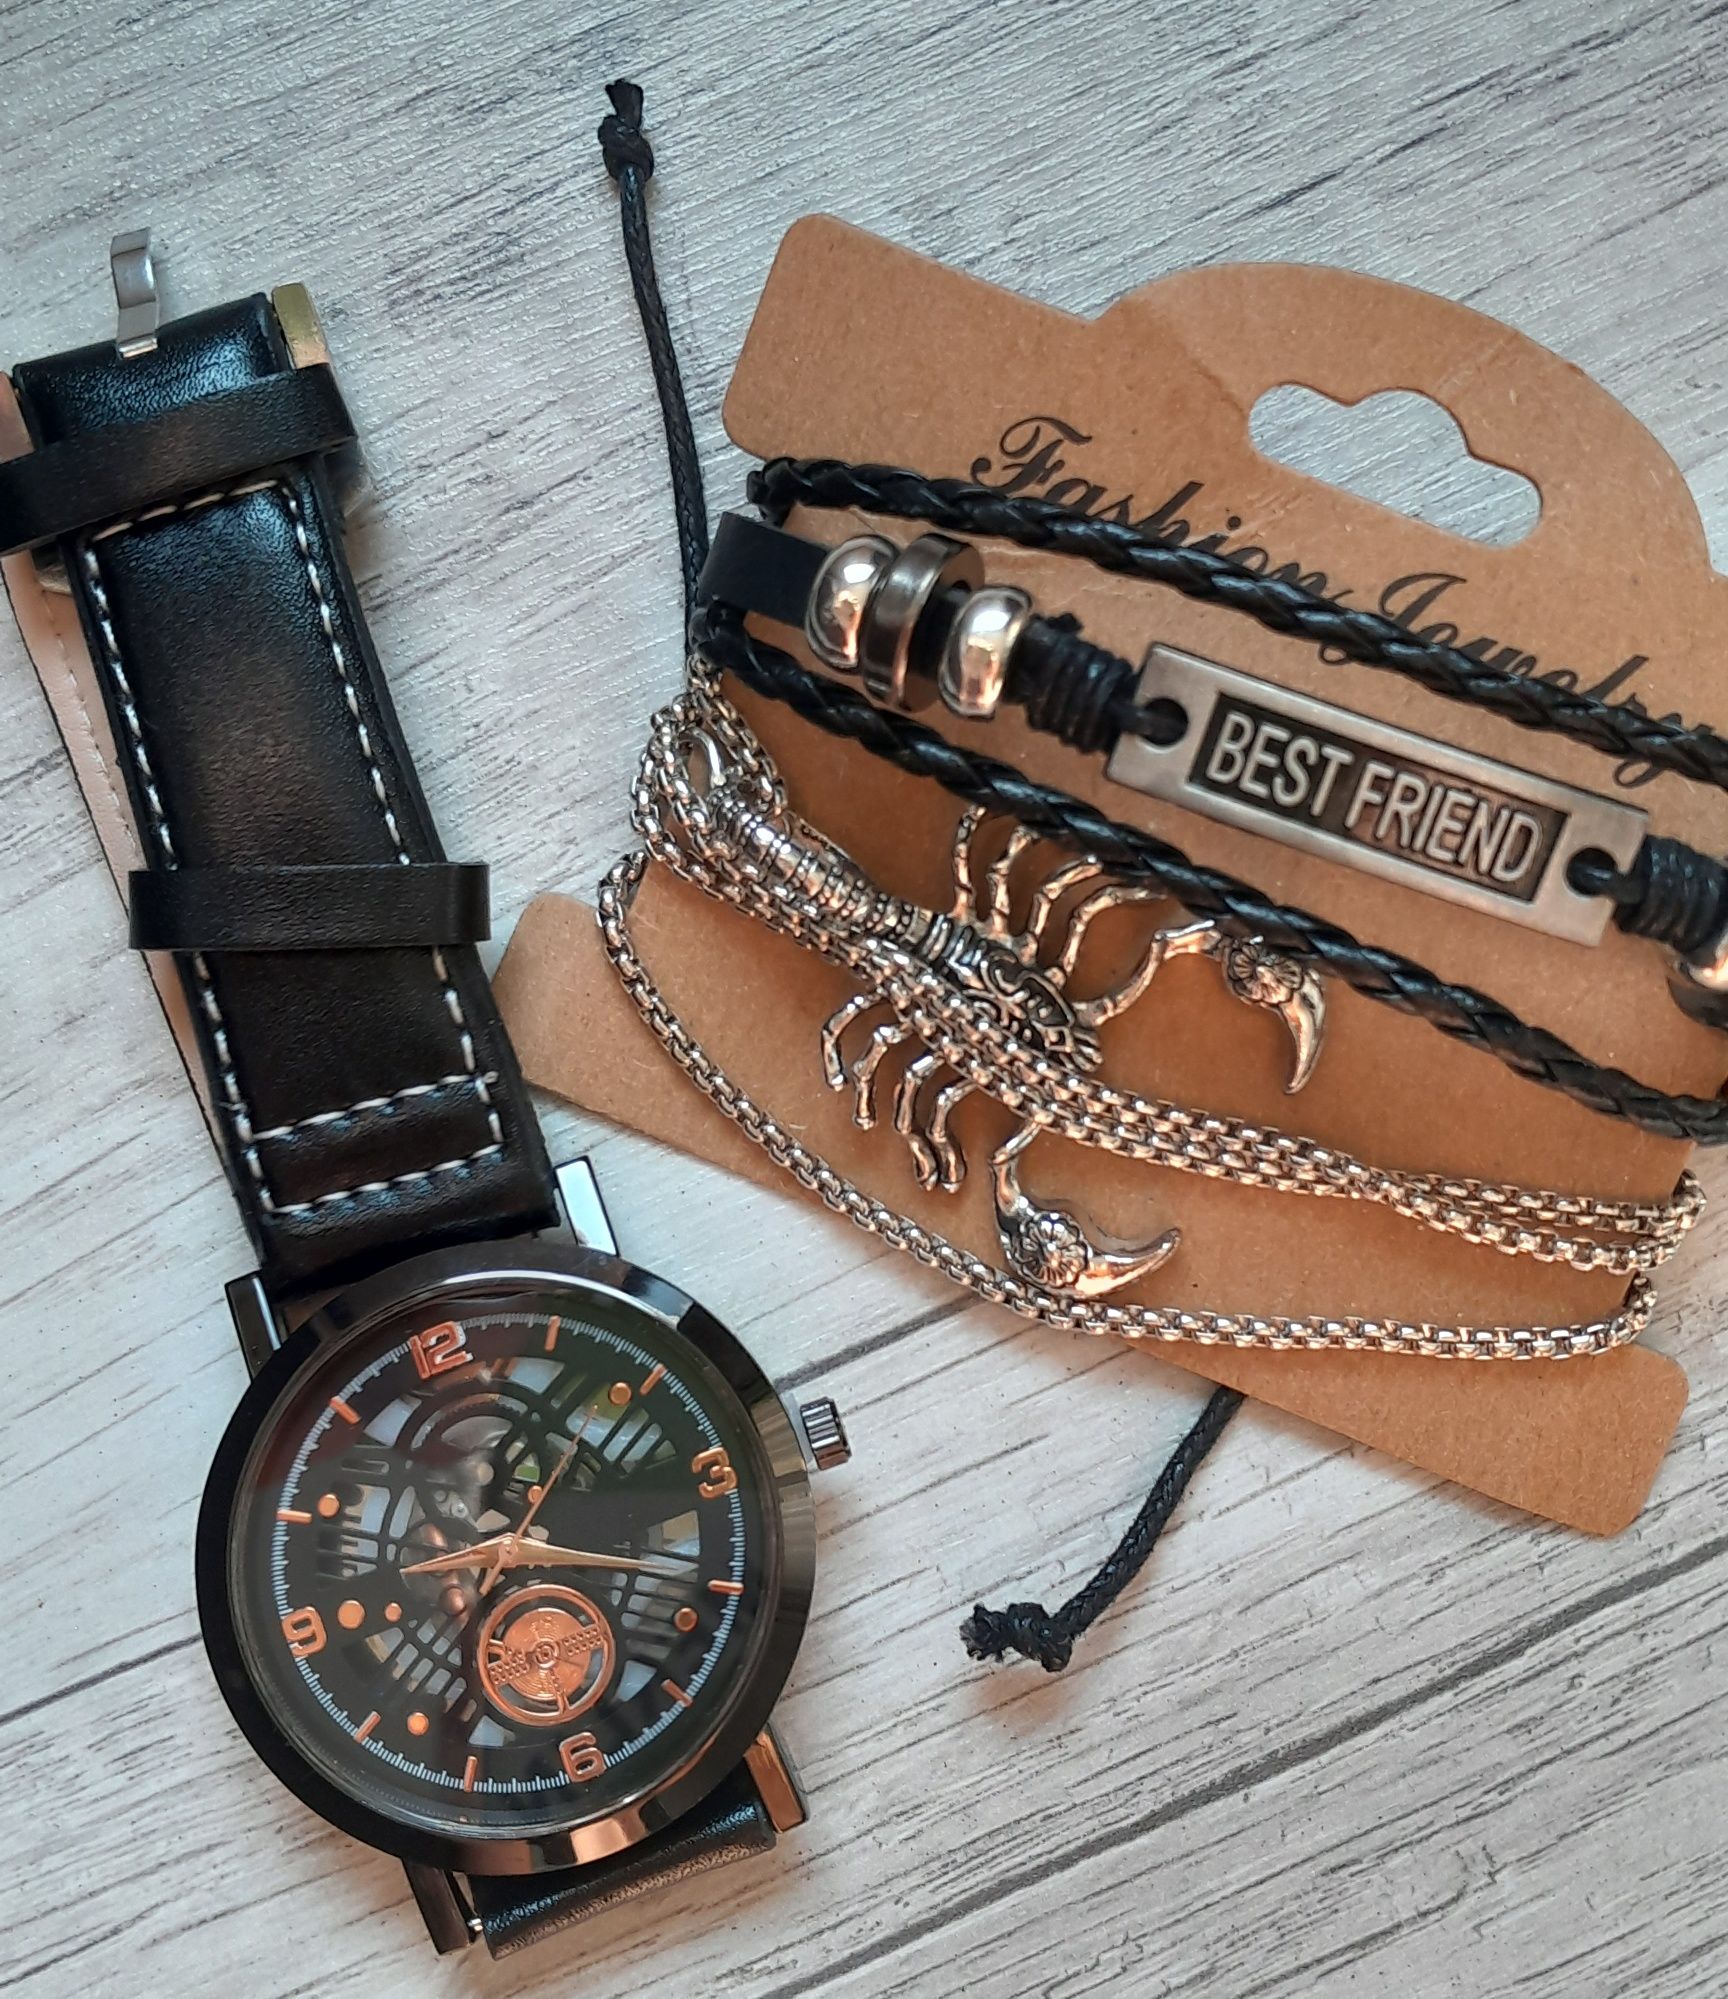 Zestaw dla mężczyzny: wisior, zegarek, bransoletka